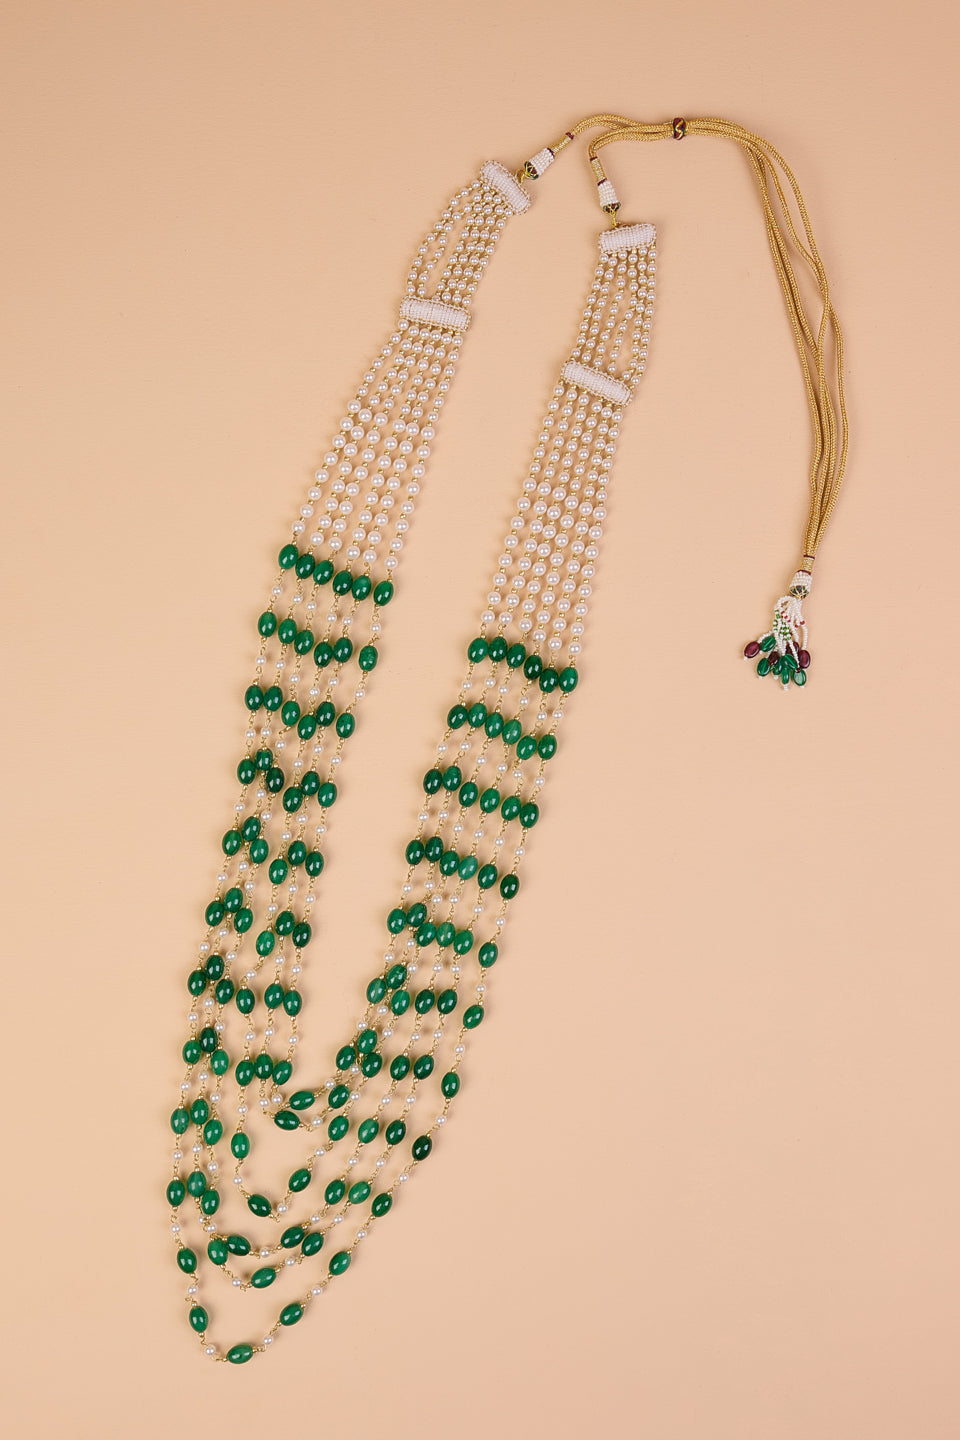 6 Layered Ivory & Green Beads Mala